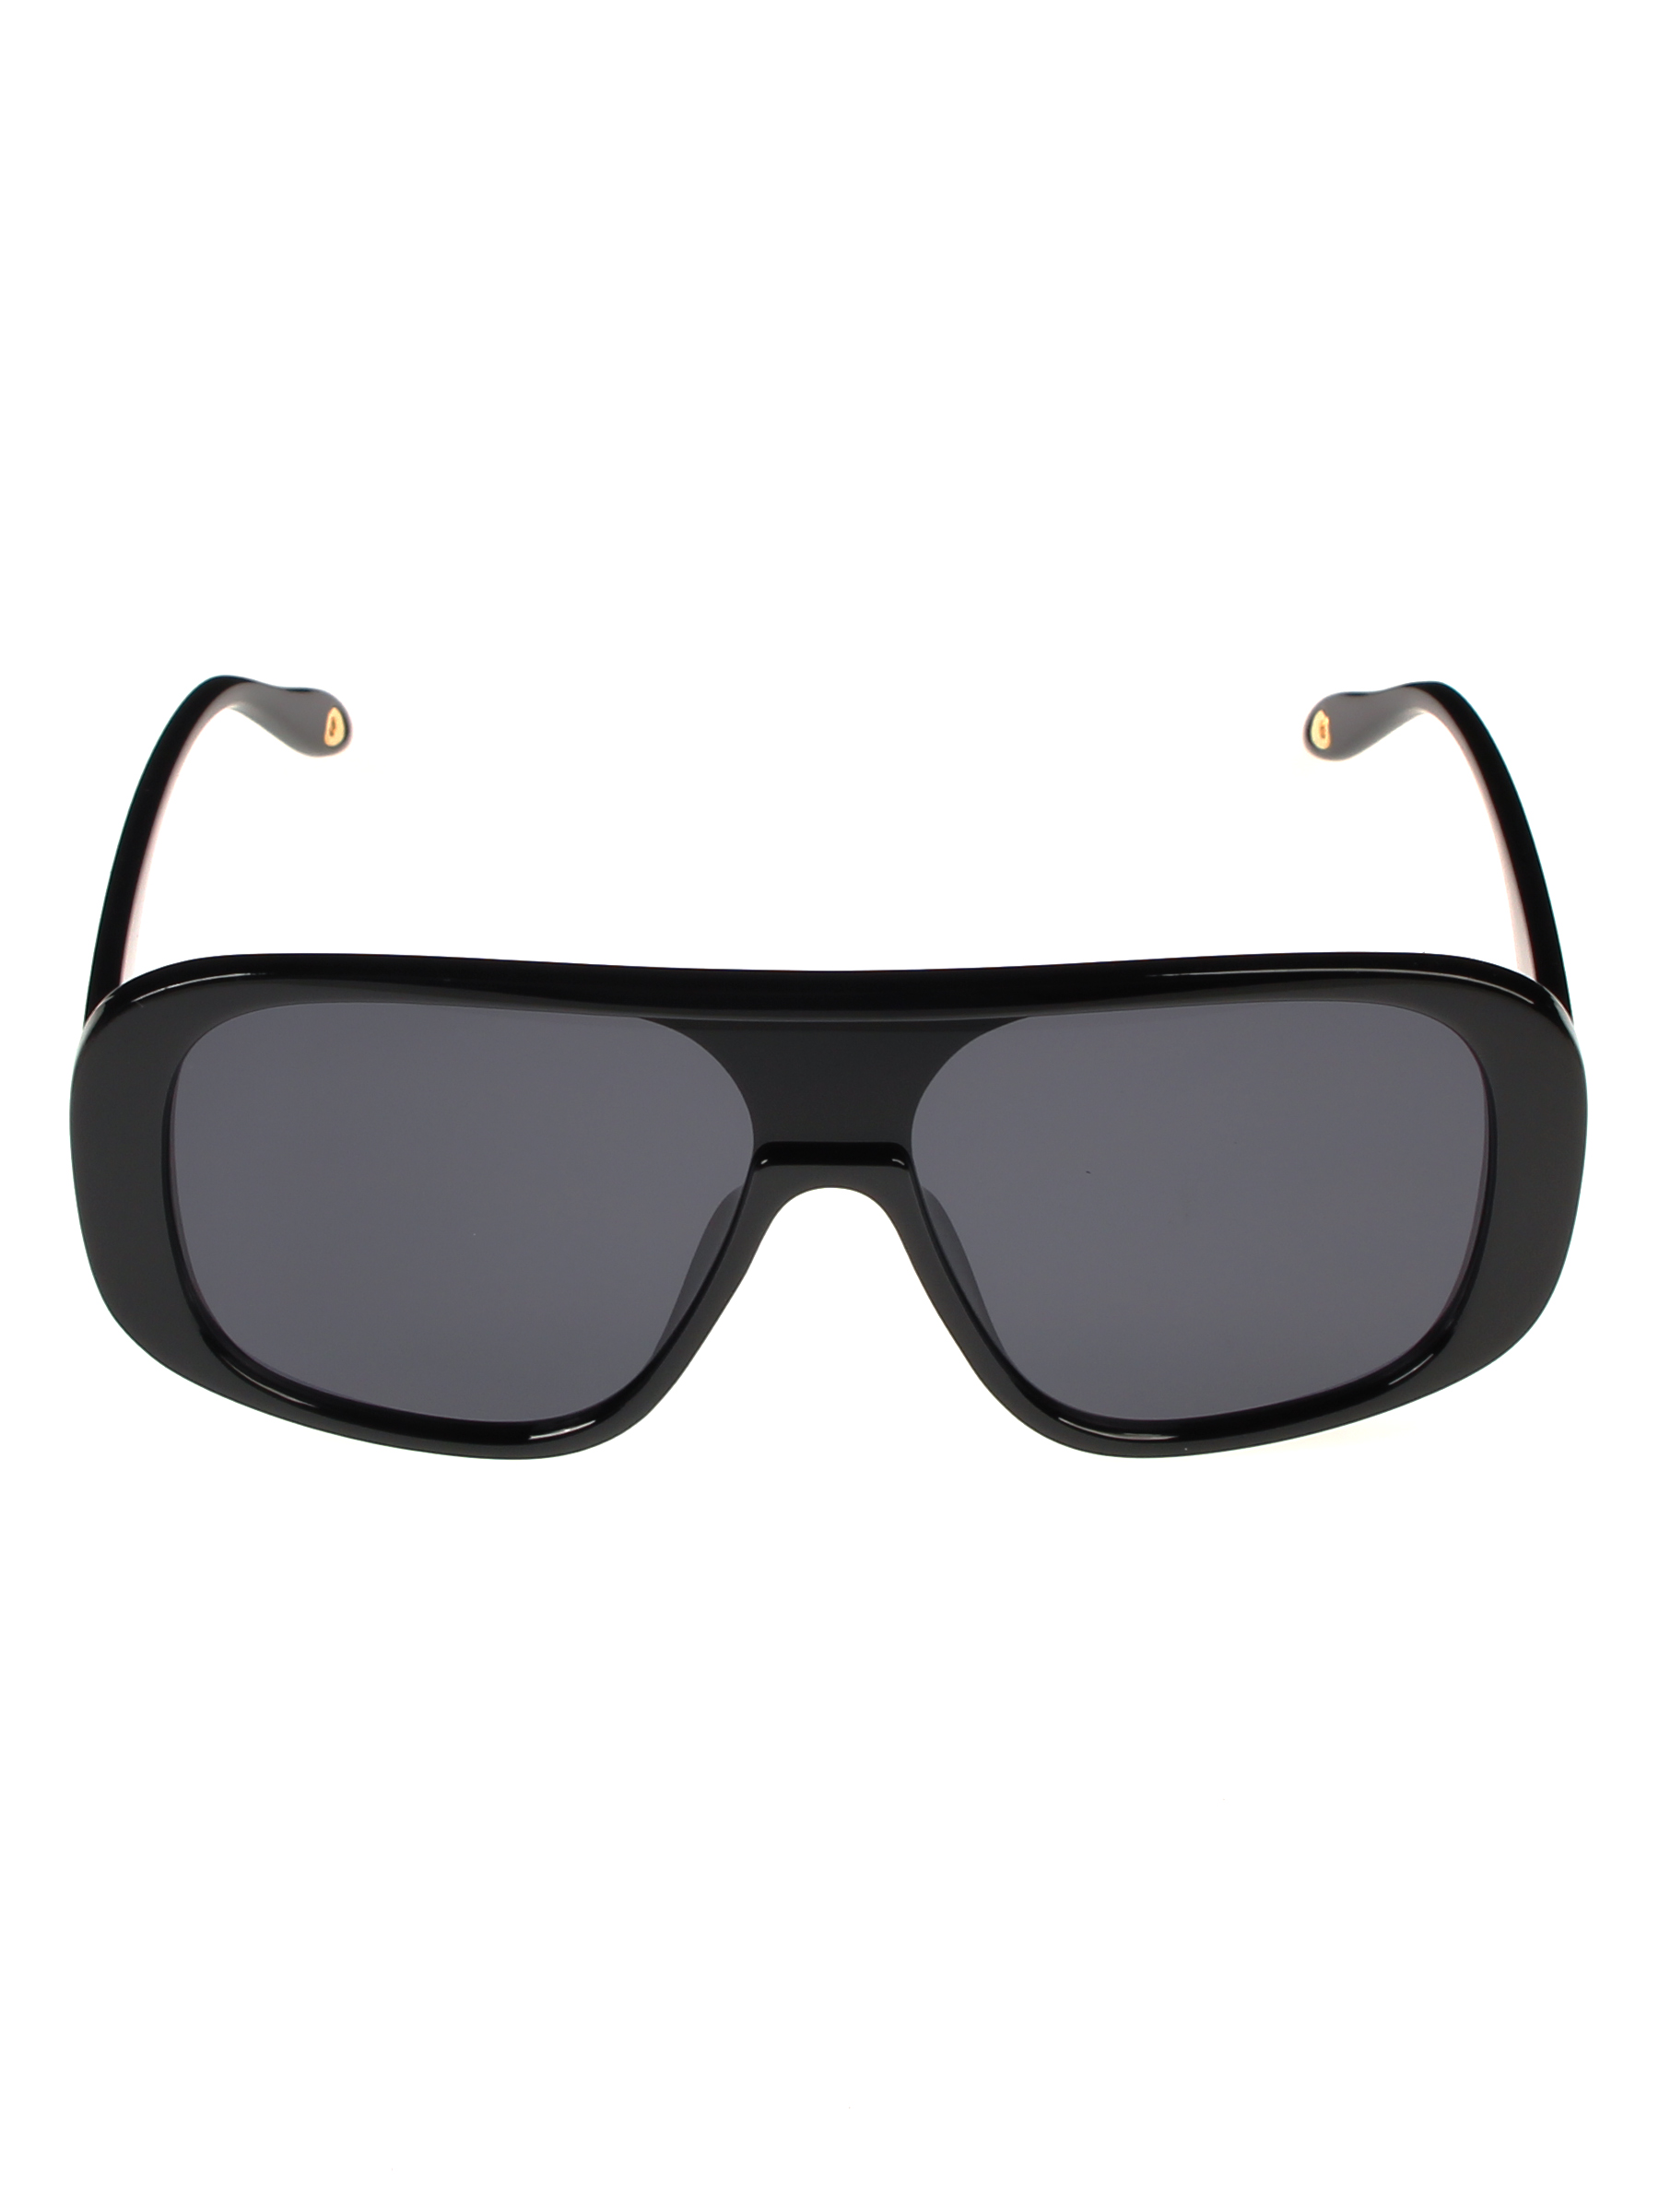 Солнцезащитные очки женские Pretty Mania NDP010 черные